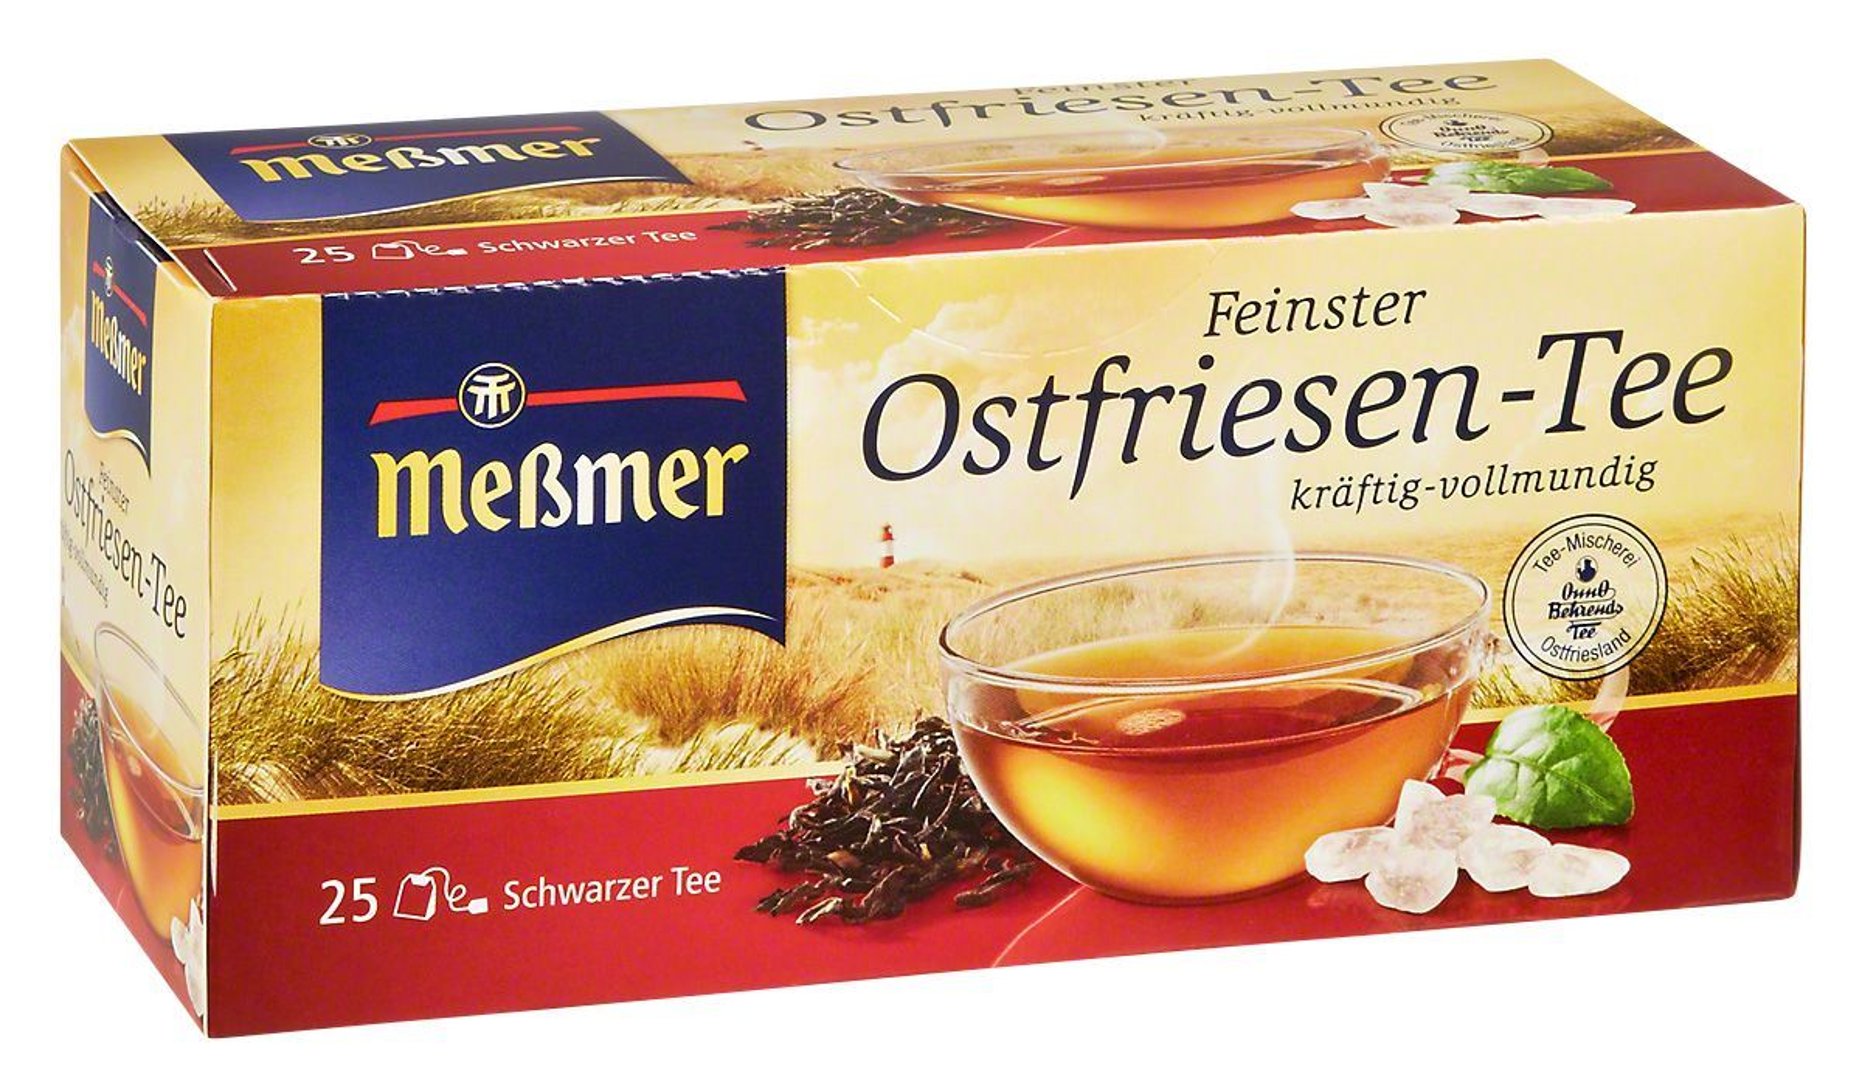 MEßMER - Schwarzer Tee Feinster Ostfriesen-Tee kräftig-vollmundig, 25 Teebeutel - 38 g Faltschachtel